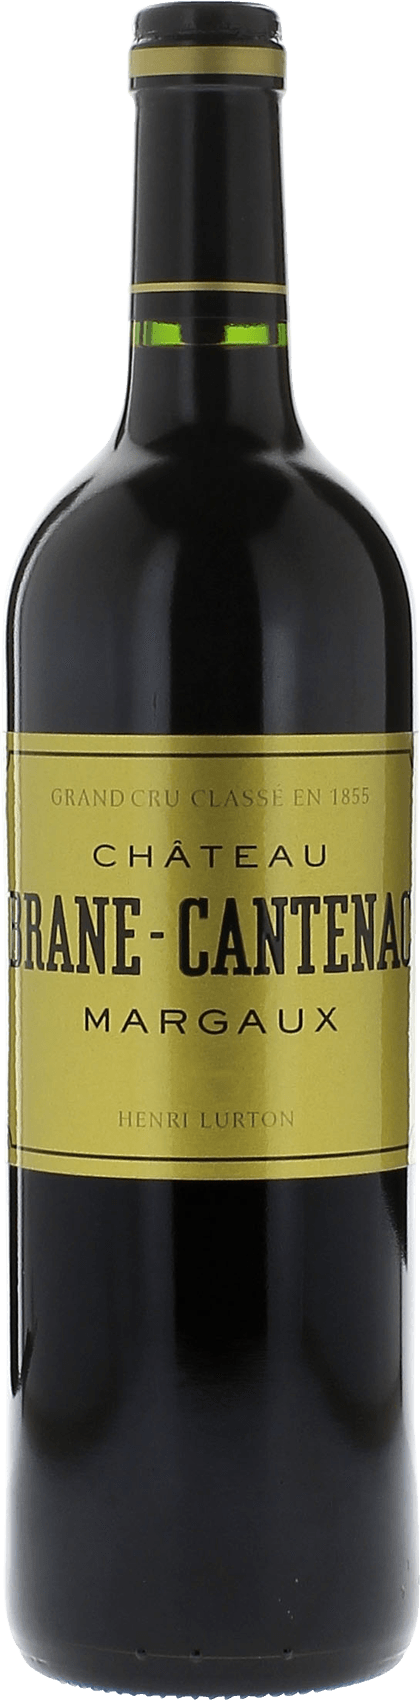 Brane cantenac 1985 2me Grand cru class Margaux, Bordeaux rouge